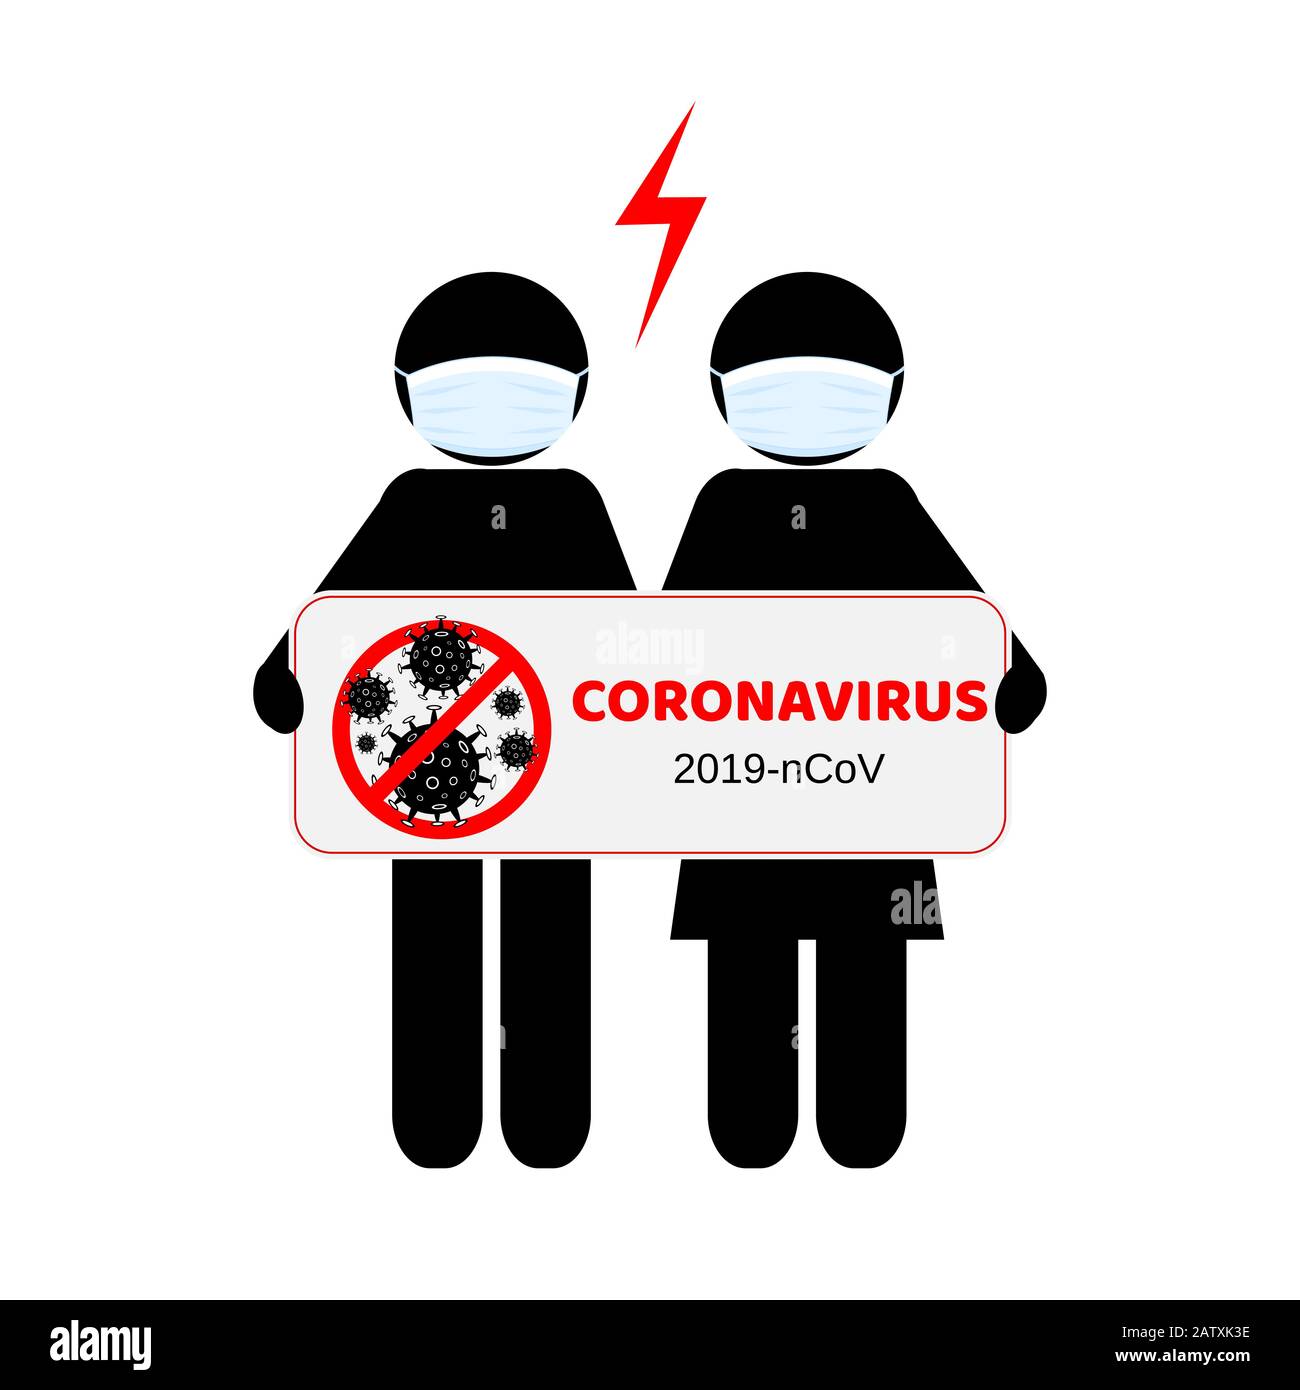 Gefährliches chinesisches Coronavirus. Wuhan Roman Coronavirus 2019-nCoV. Menschen in Atemschutzgeräten. Gesundheitsrisiko bei Pandemie. Vektorgrafiken Stock Vektor